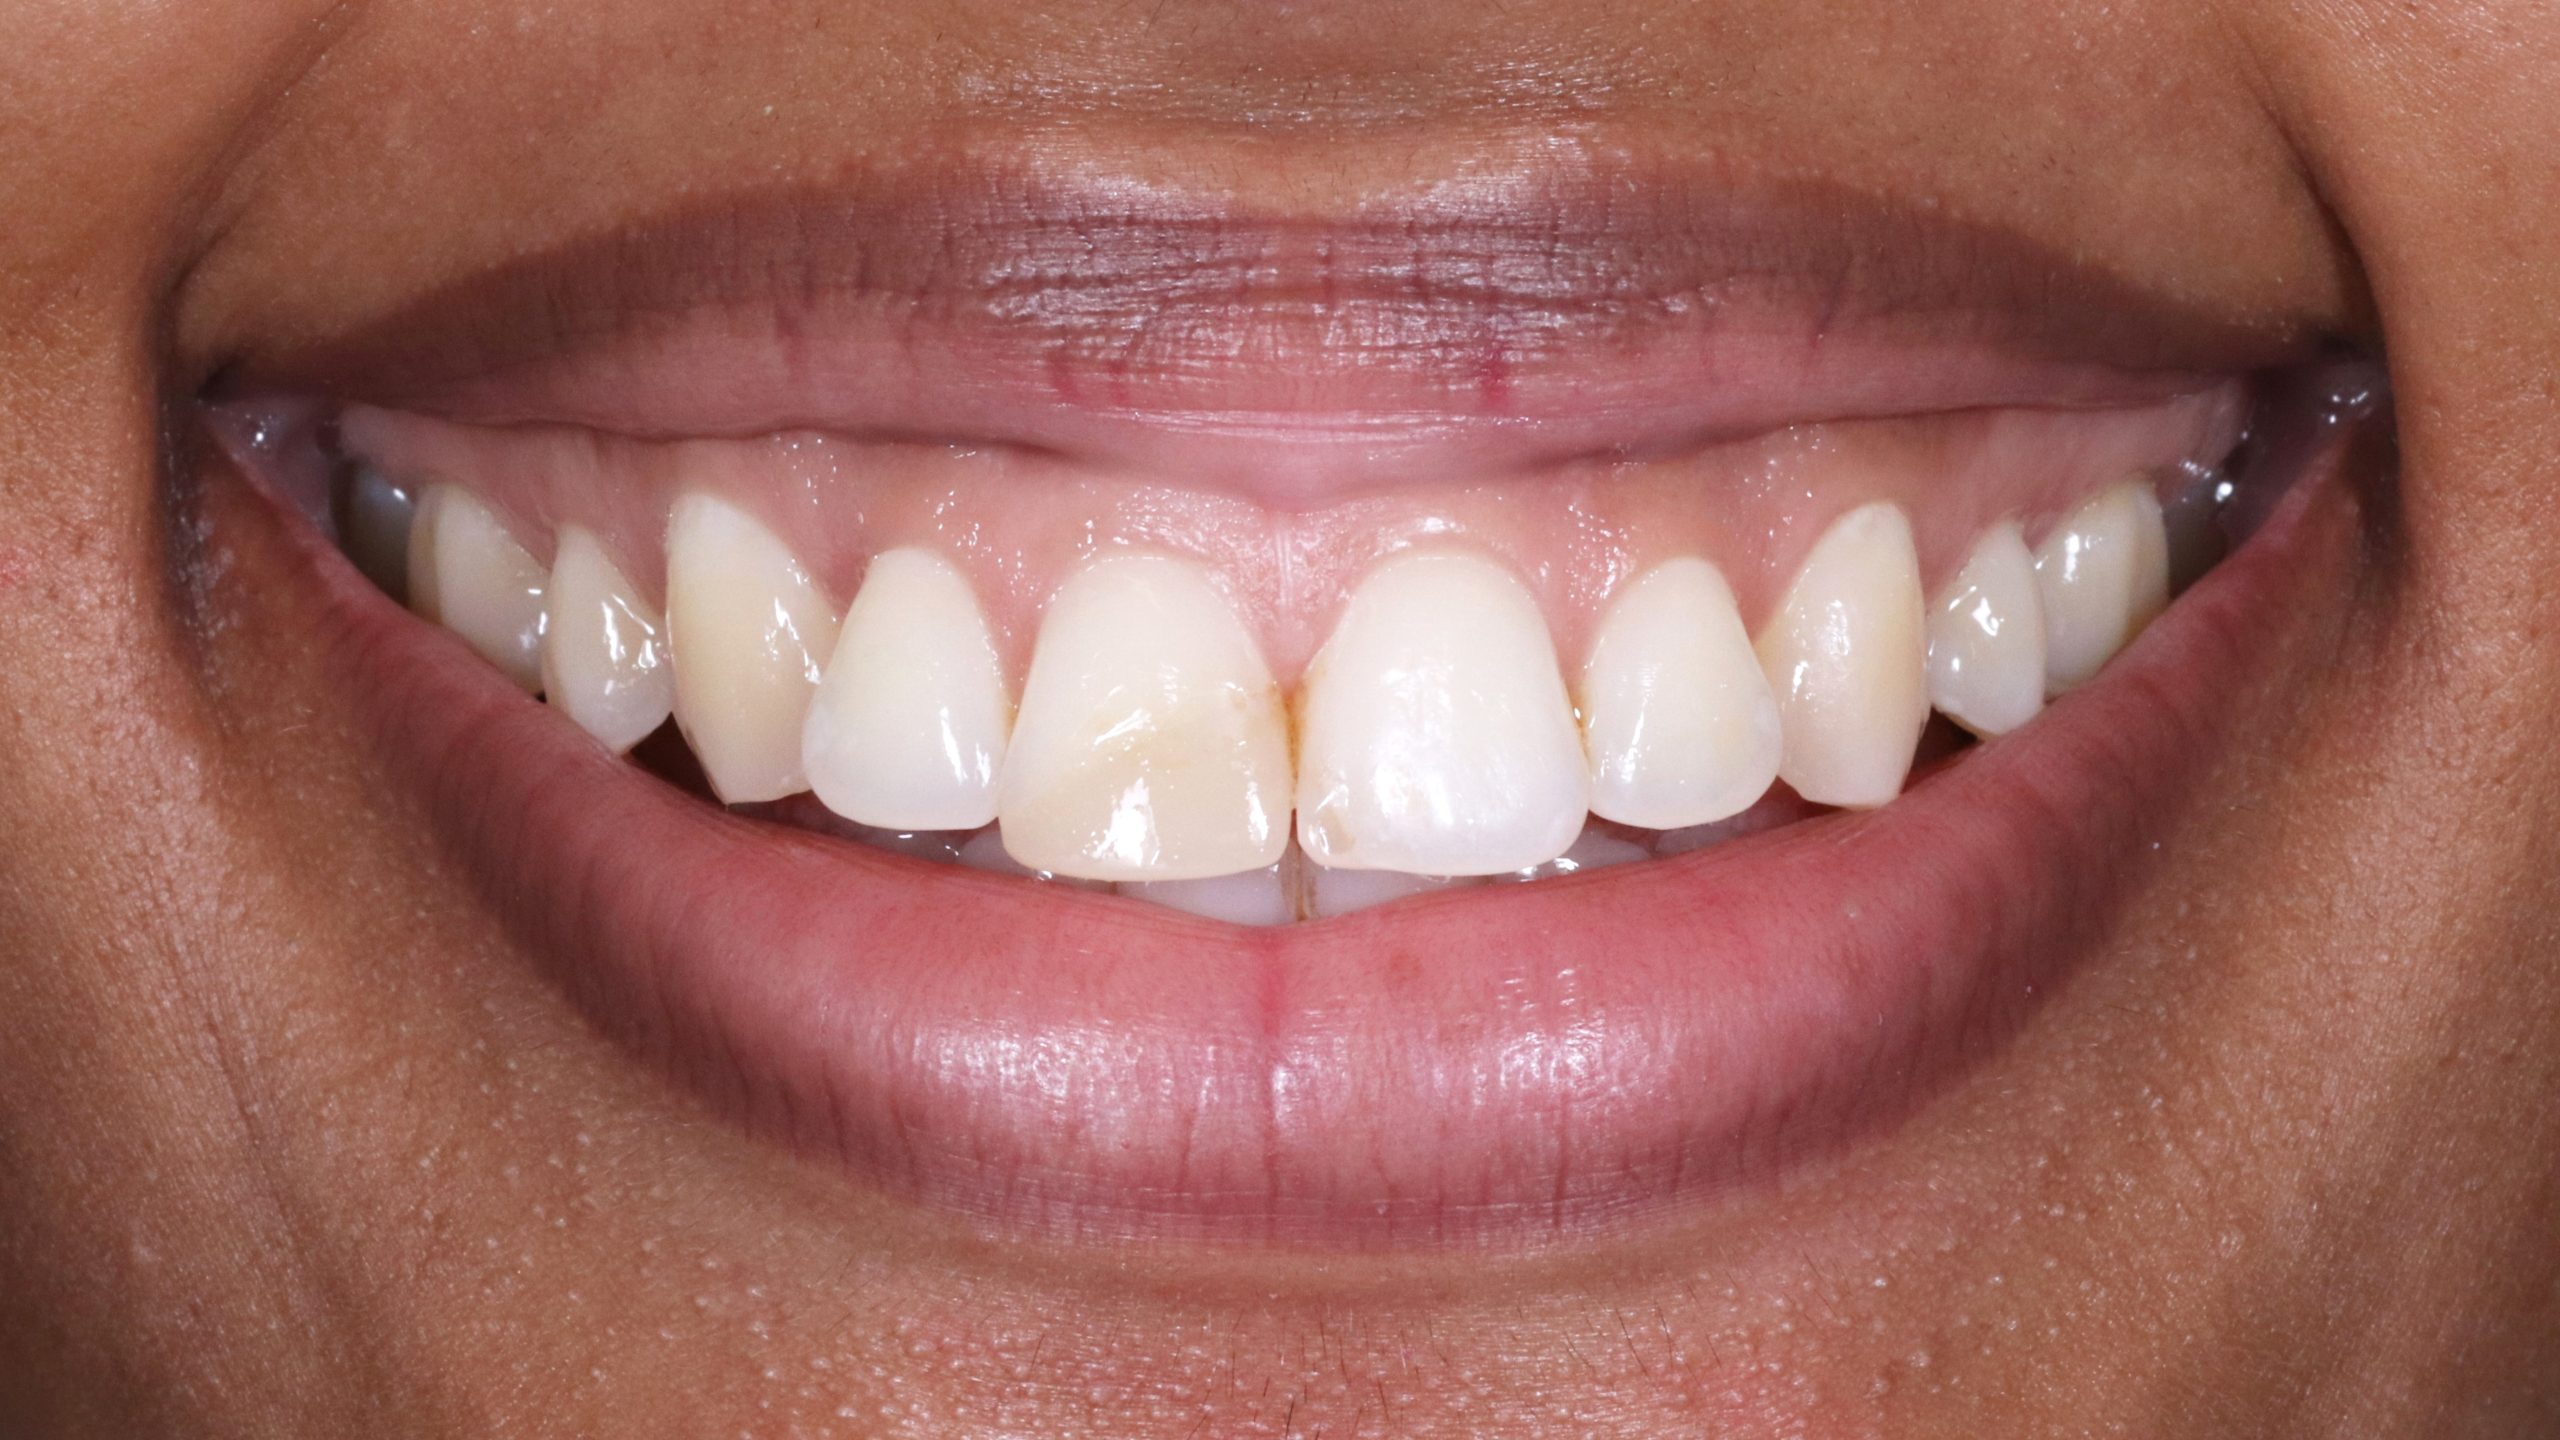 Minimalinvasive-Veneers-muenchen-zahnarzt-zahnbehandlung-vorher